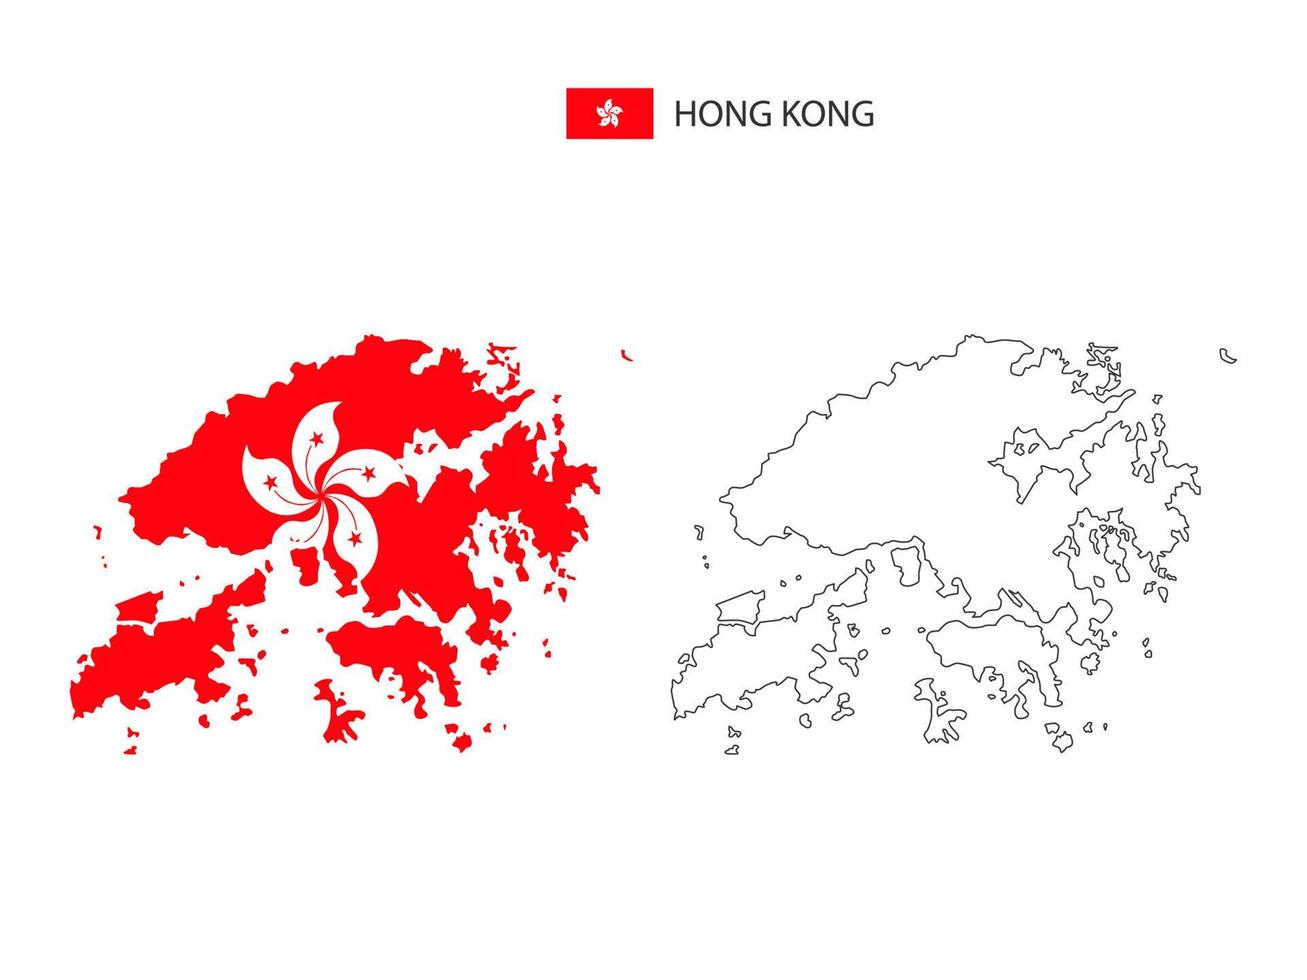 hong kong karte stadtvektor geteilt durch umrisseinfachheitsstil. haben 2 Versionen, eine schwarze Version mit dünner Linie und eine Version in der Farbe der Landesflagge. beide Karten waren auf dem weißen Hintergrund. vektor